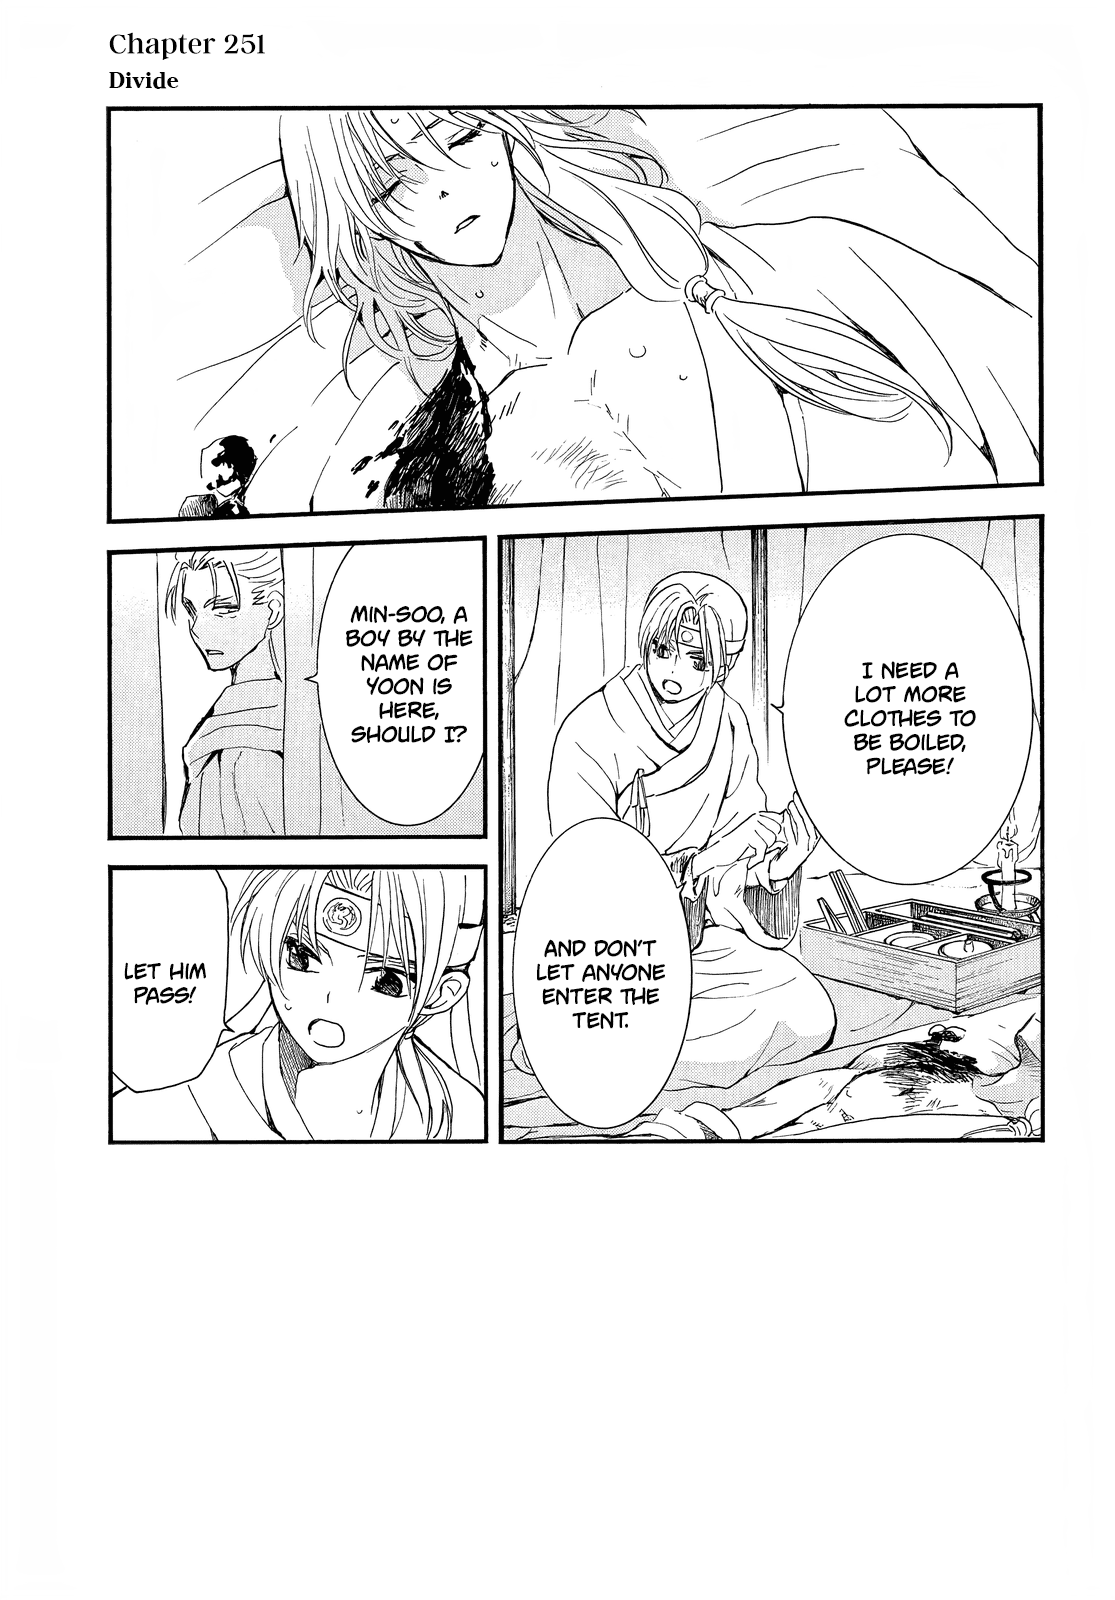 Akatsuki No Yona, Chapter 251 - Akatsuki No Yona Manga Online